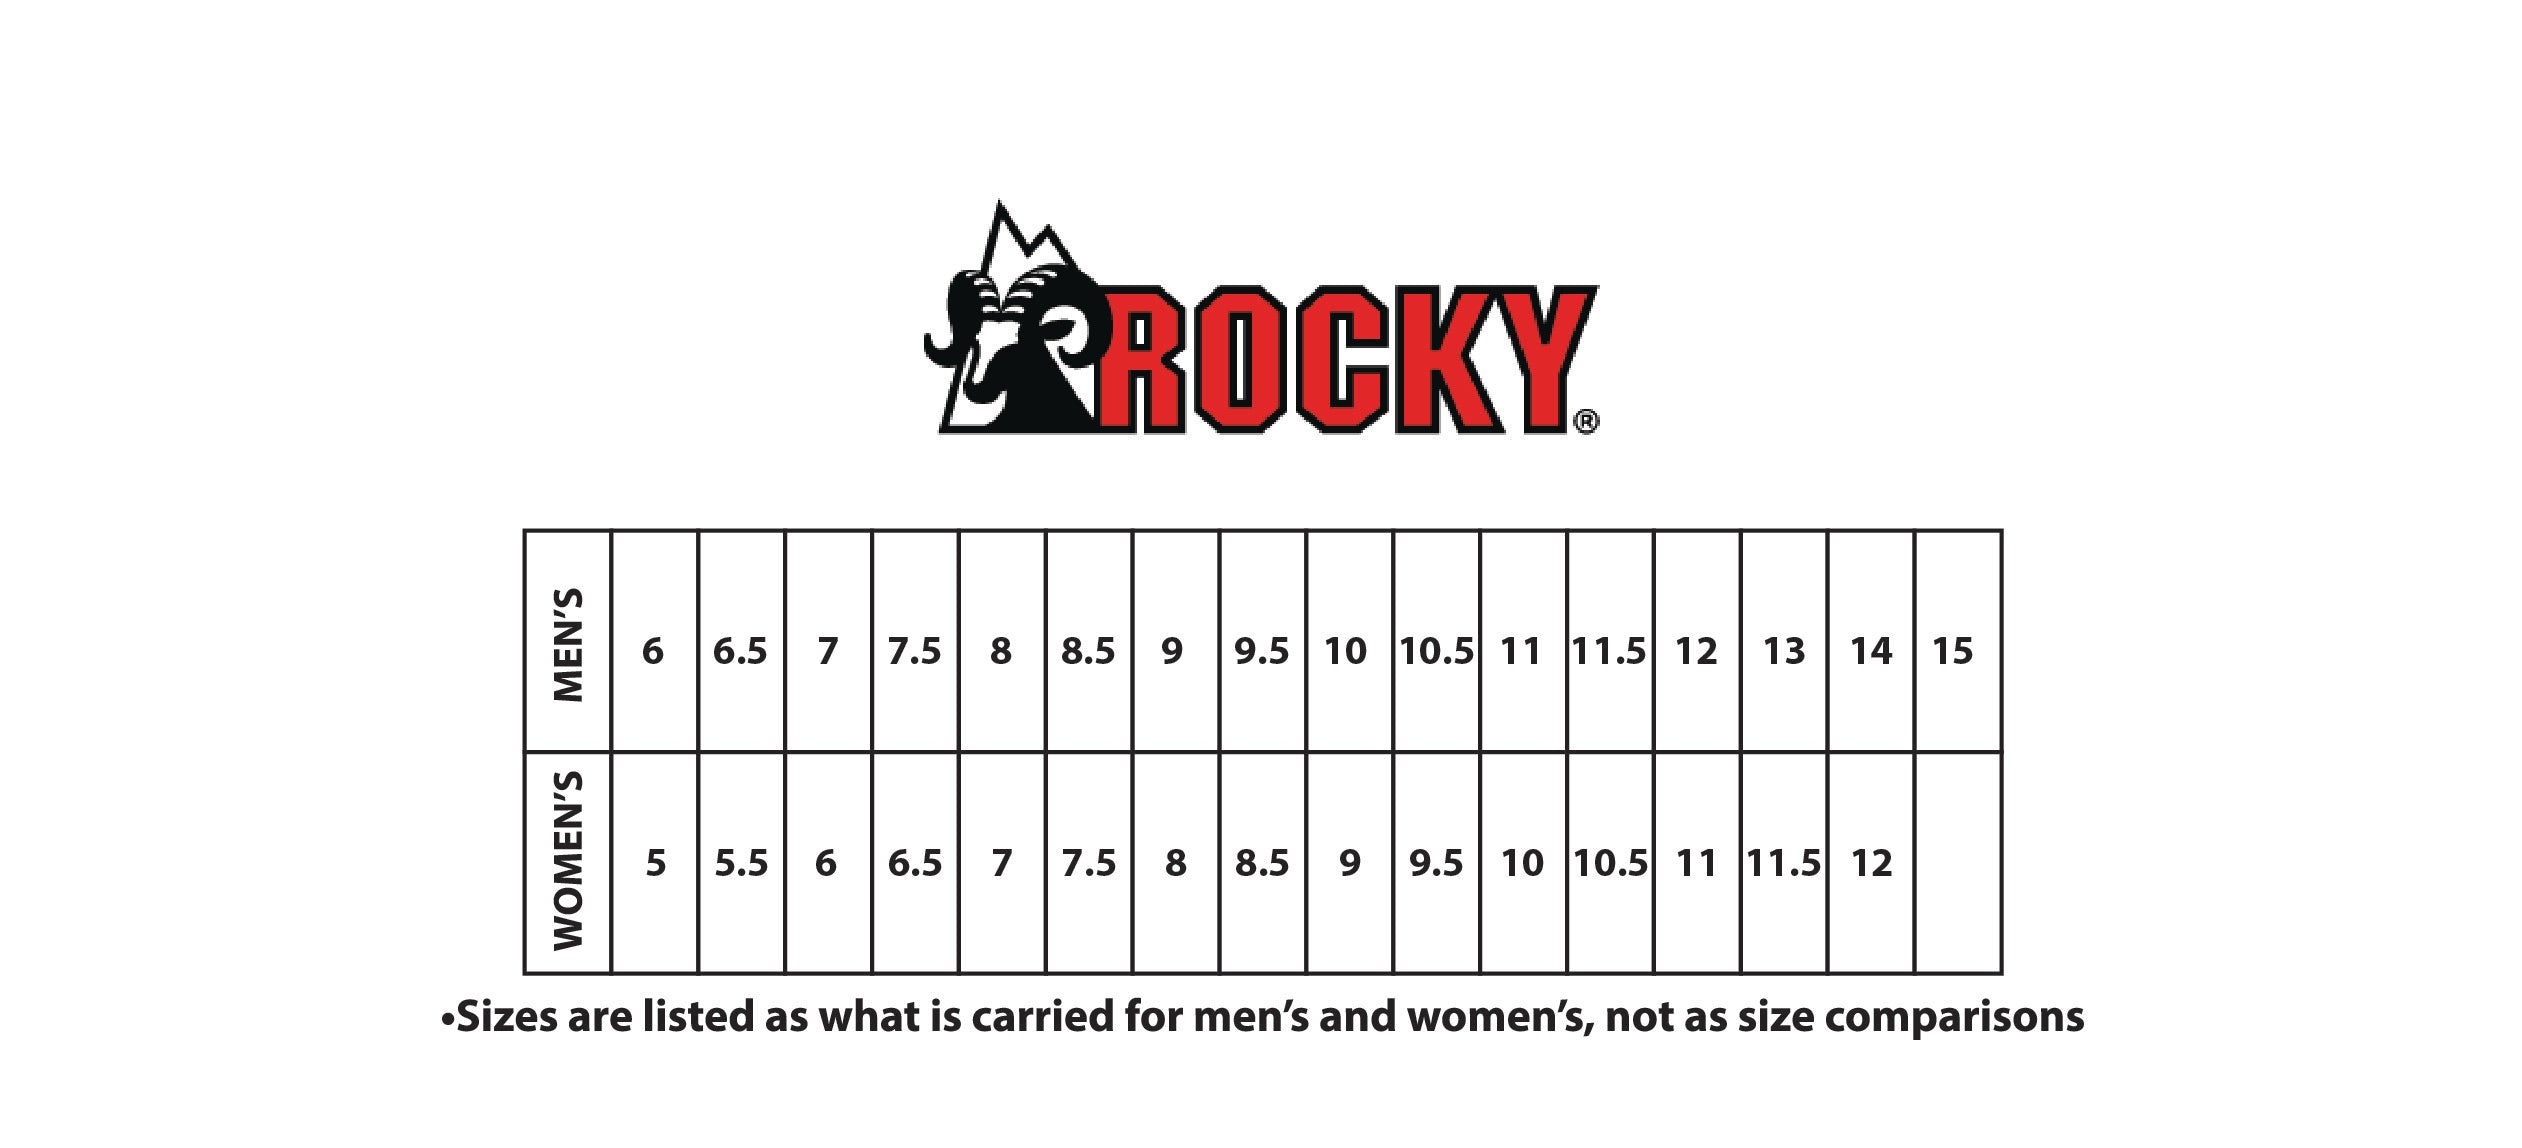 ROCKY FOOTWEAR SIZE CHART